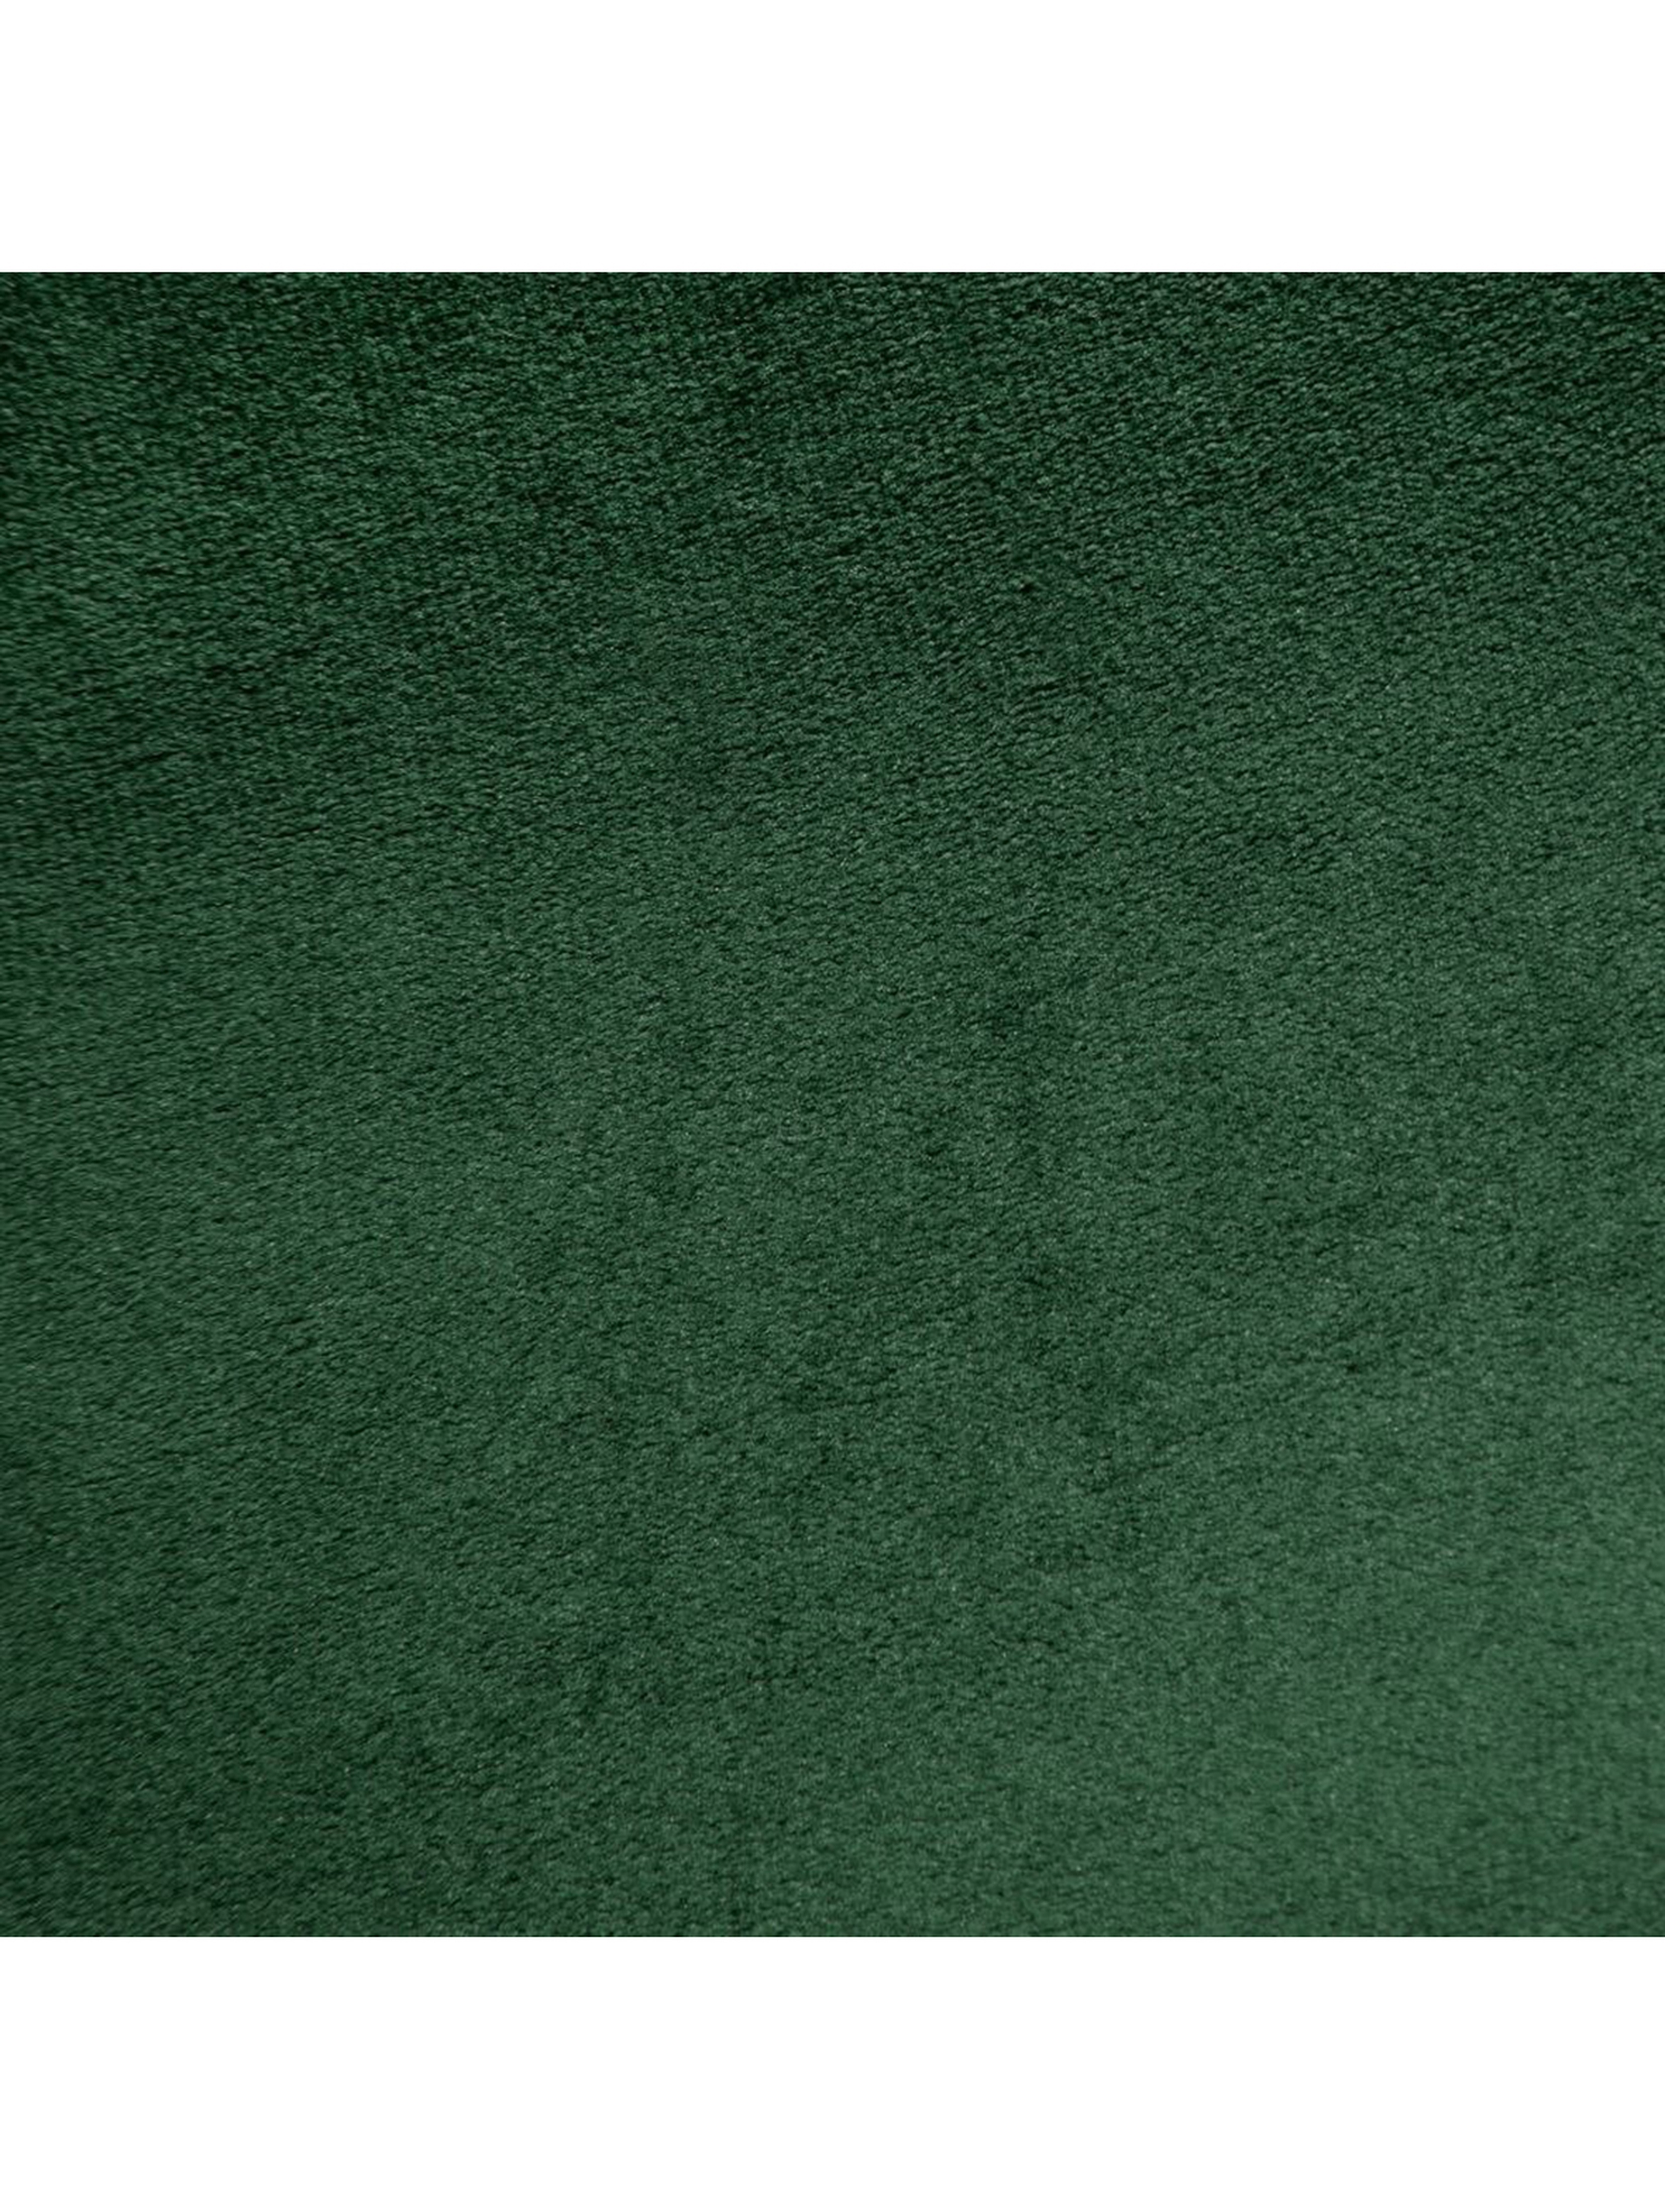 Zasłona gotowa d91 Rosa 140x250 cm zielony